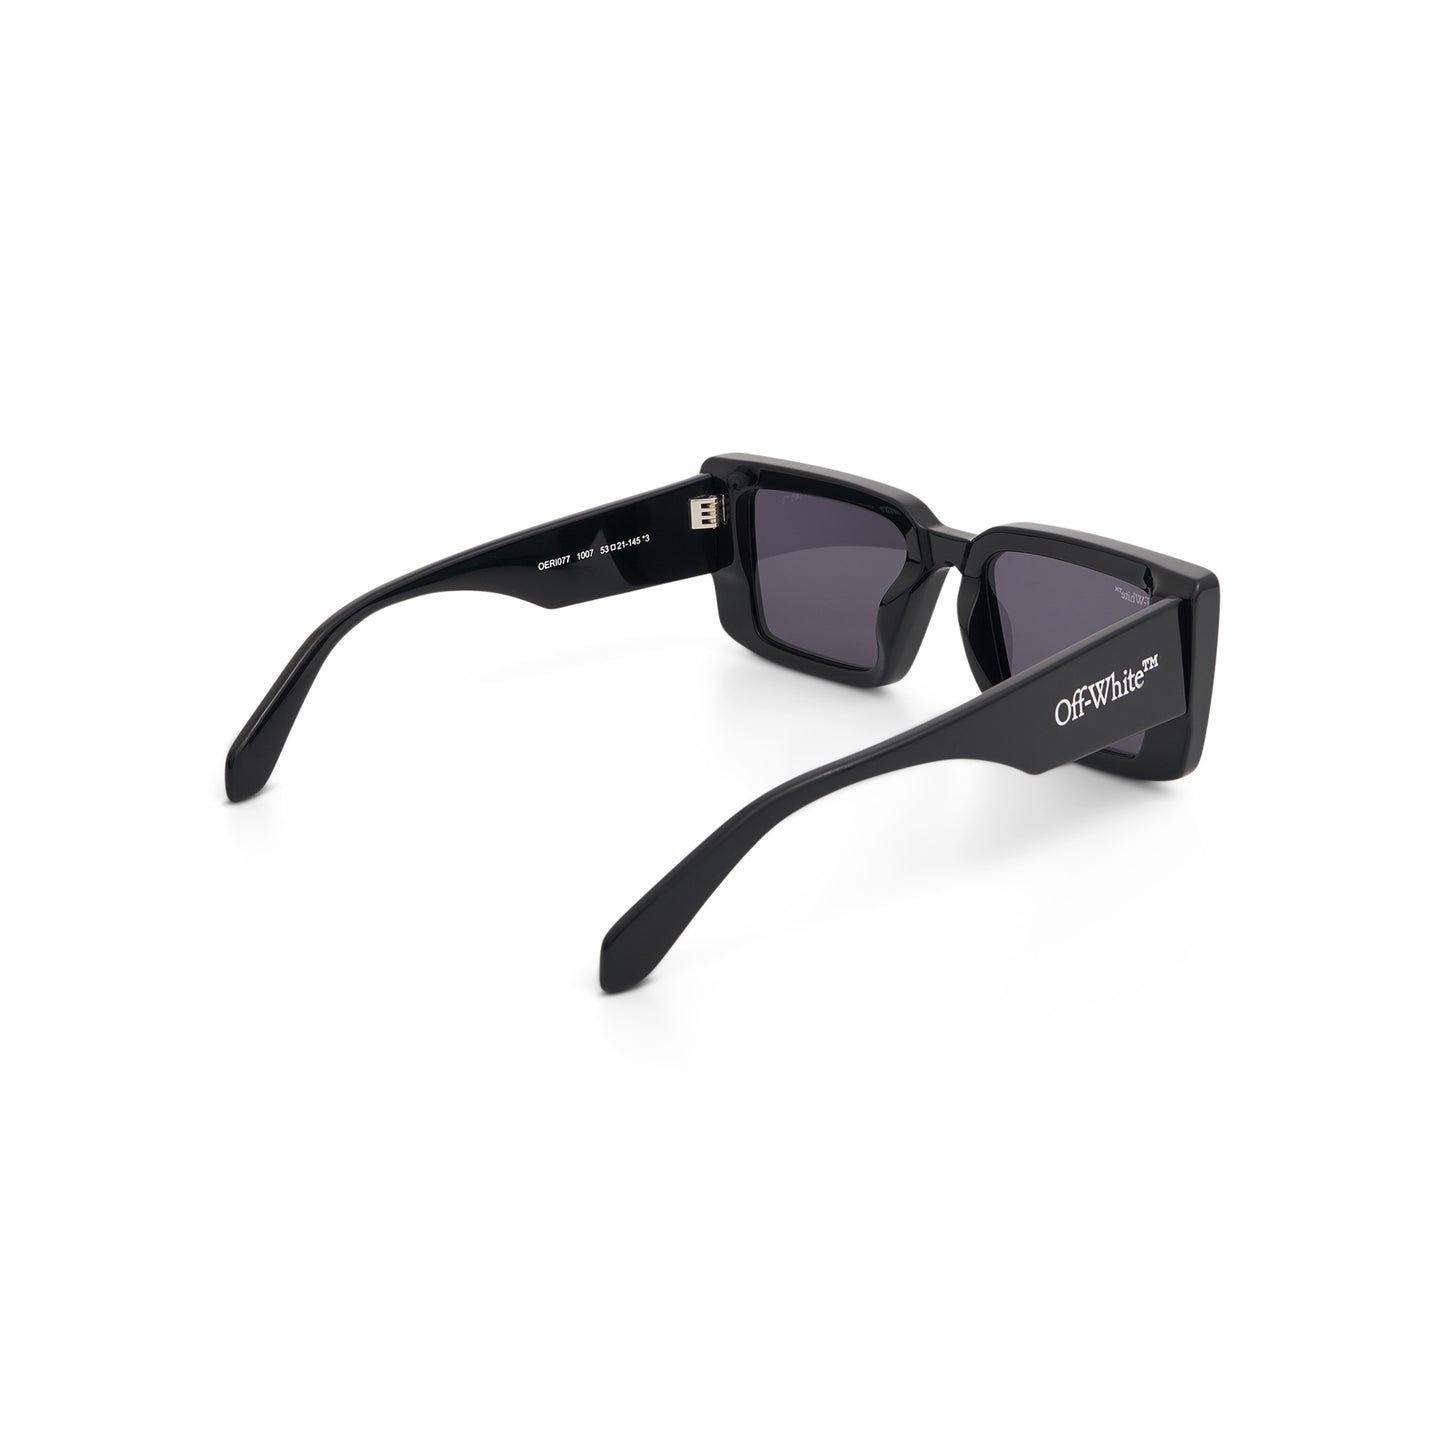 AF Savannah Sunglasses in Black/Dark Grey